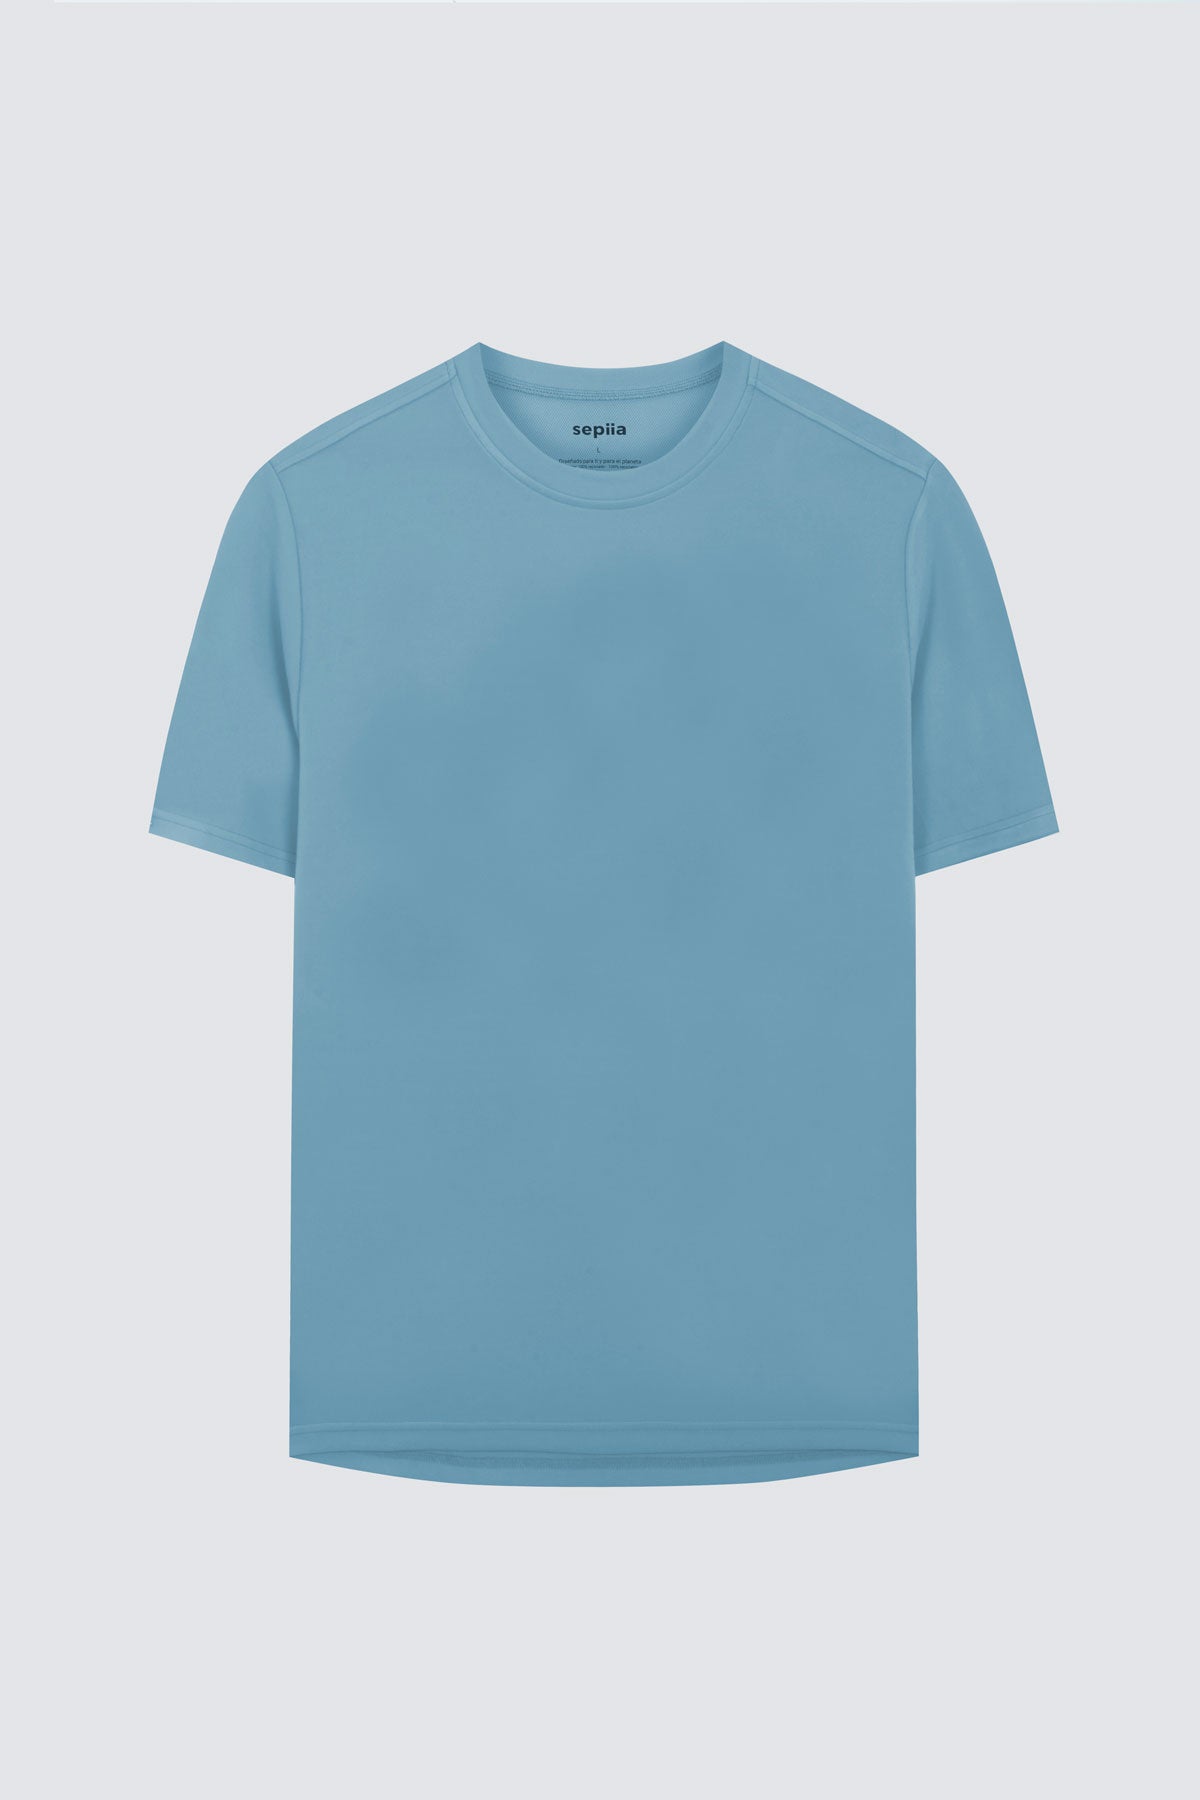 Camiseta de hombre en azul atlas de Sepiia, estilo y comodidad en una prenda duradera. Foto prenda en plano